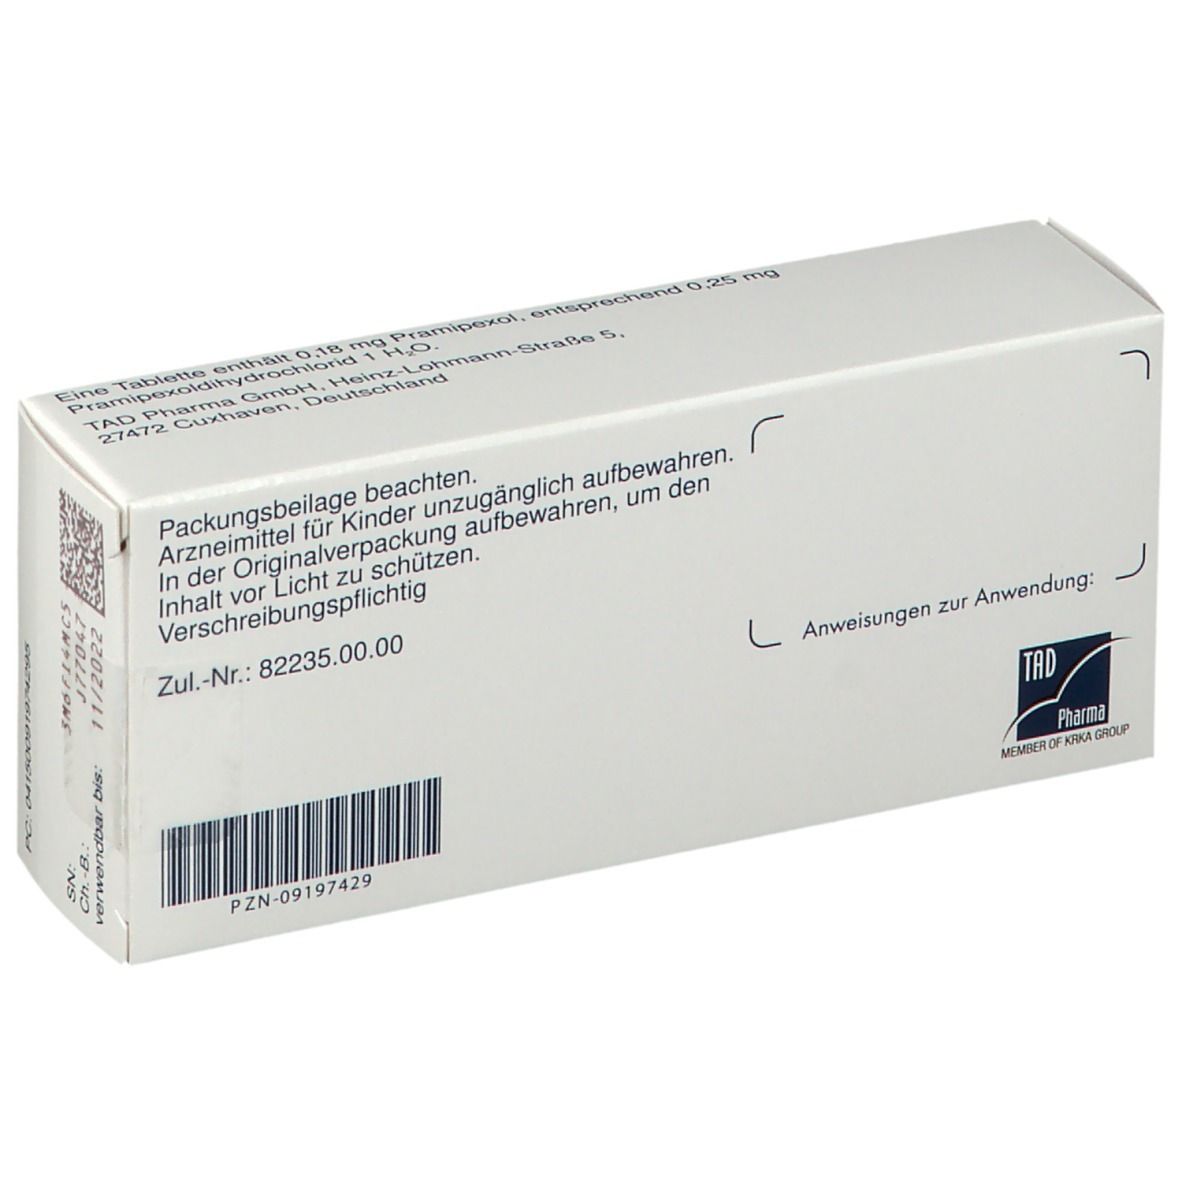 Pramipexol TAD® 0,18 mg